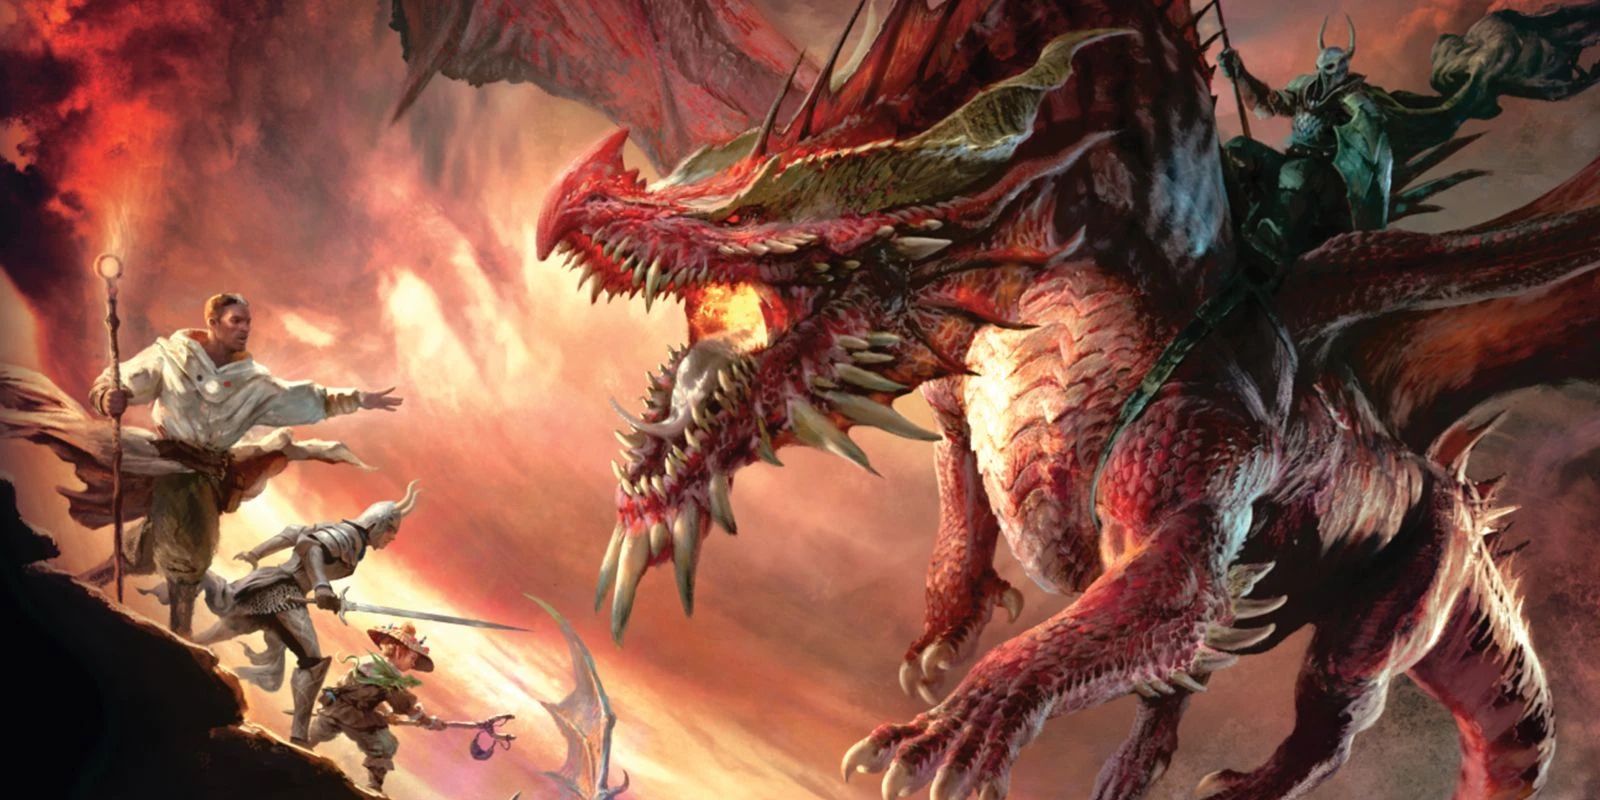 Gambar sampul untuk D&D's Dragonlance: Shadow of the Dragon Queen Deluxe Edition, menunjukkan musuh lapis baja yang menunggangi naga merah, yang akan menembakkan api ke pesta yang berdiri di tanah.